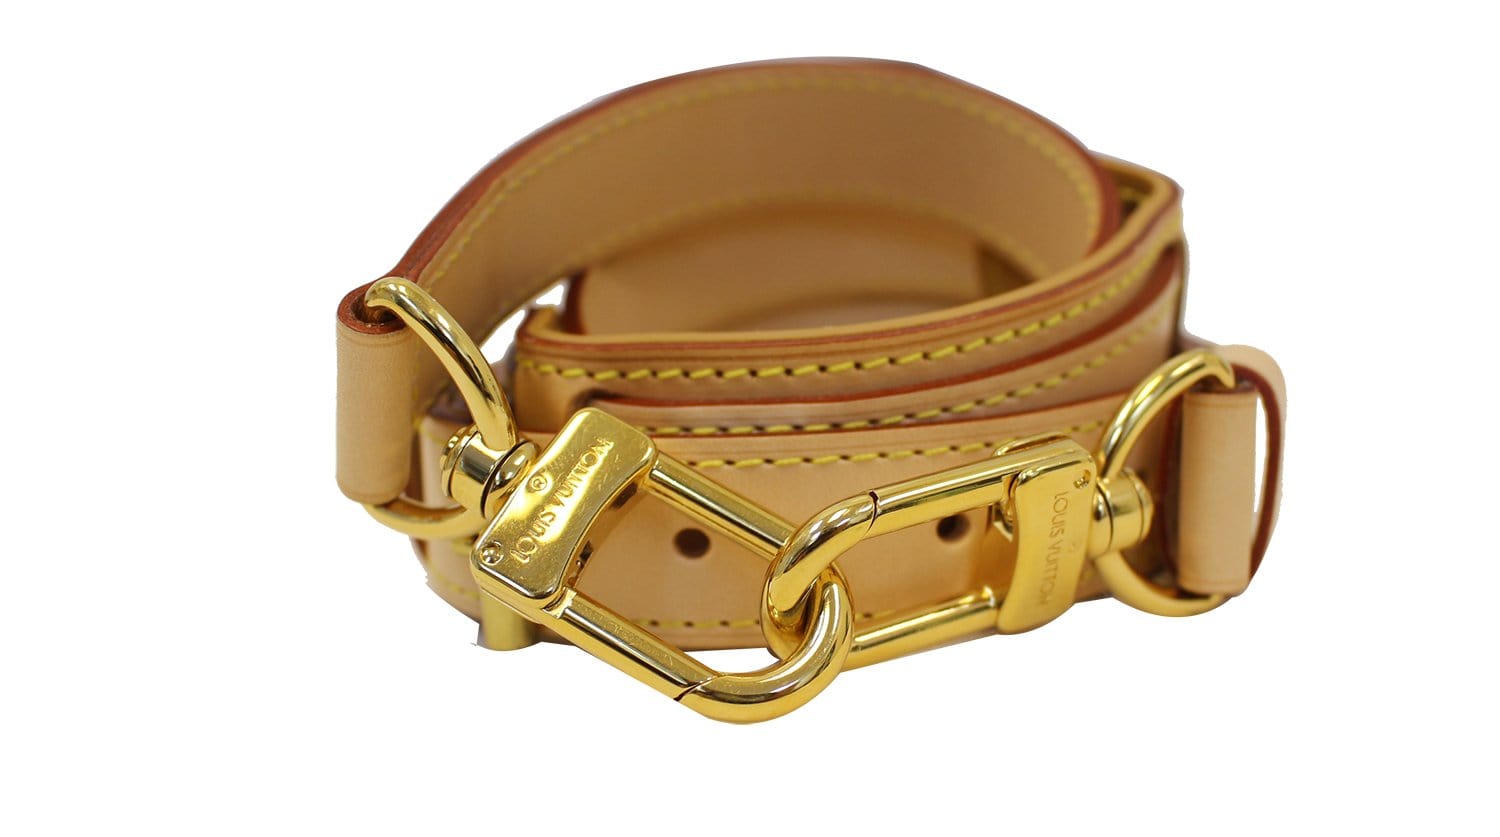 LOUIS VUITTON Logo Shoulder Strap Leather Beige Gold Bag Accessory 68SG547